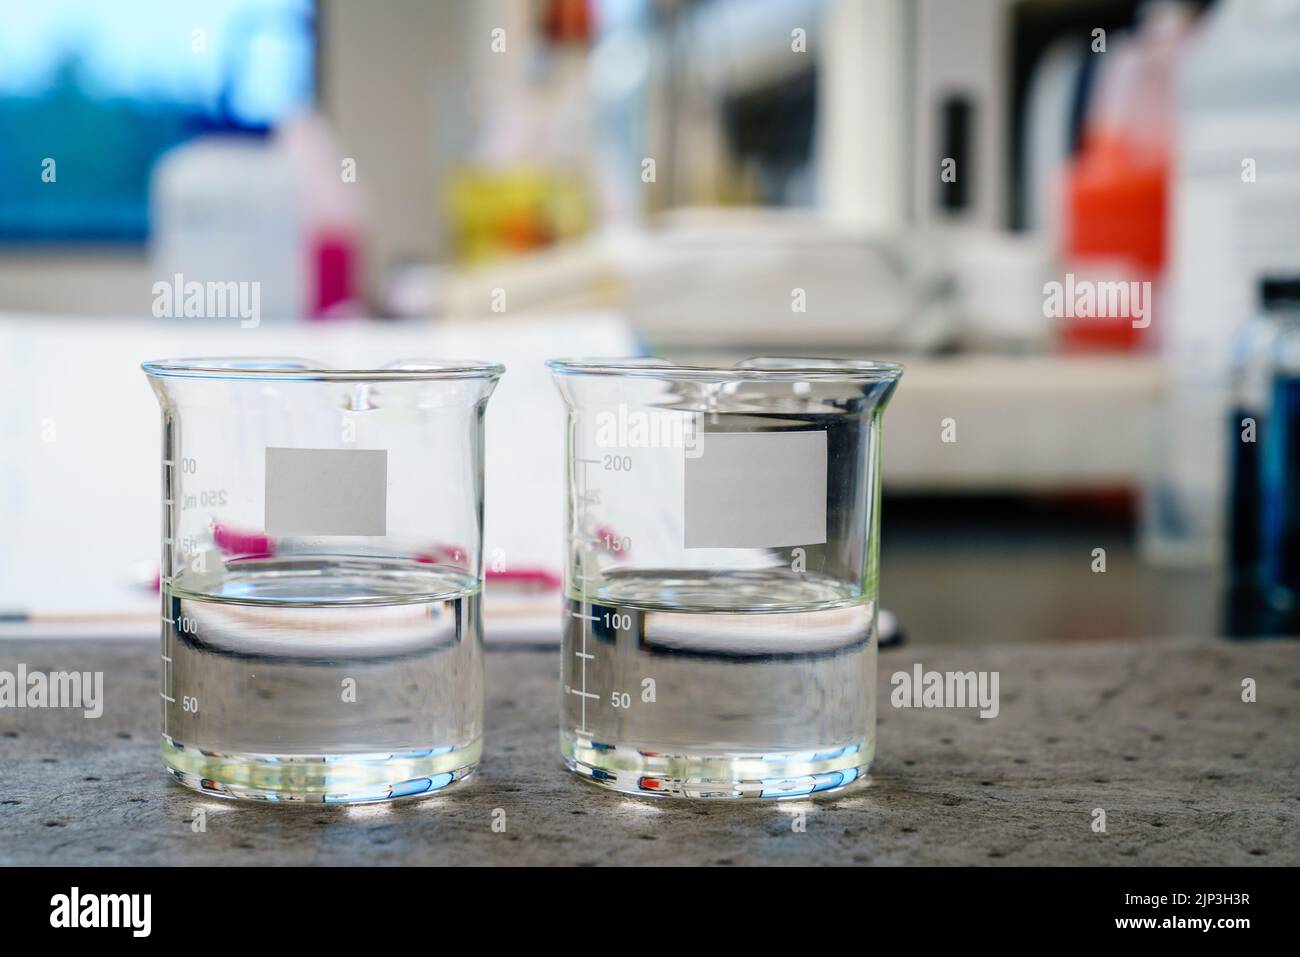 Deux béchers avec des liquides transparents et des étiquettes vierges sur un tampon dans un laboratoire Banque D'Images